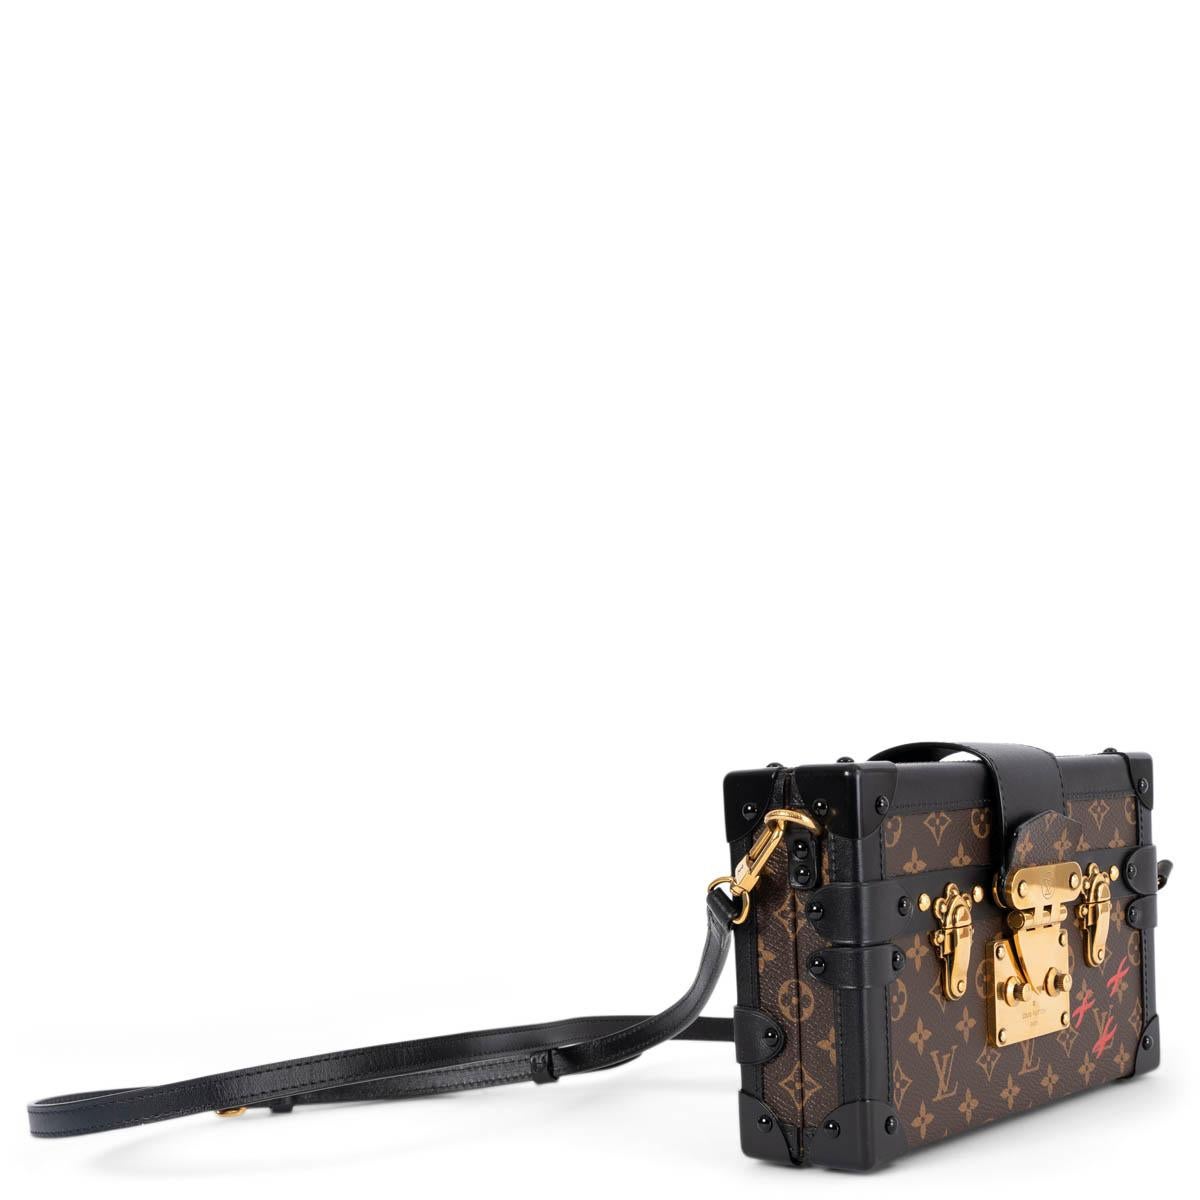 100% authentique sac Louis Vuitton Petite Malle en toile Monogram marron Ebène. La bandoulière amovible et réglable vous permet de porter ce sac comme un sac à bandoulière ou une pochette. Inspiré par l'histoire des malles Louis Vuitton, le sac